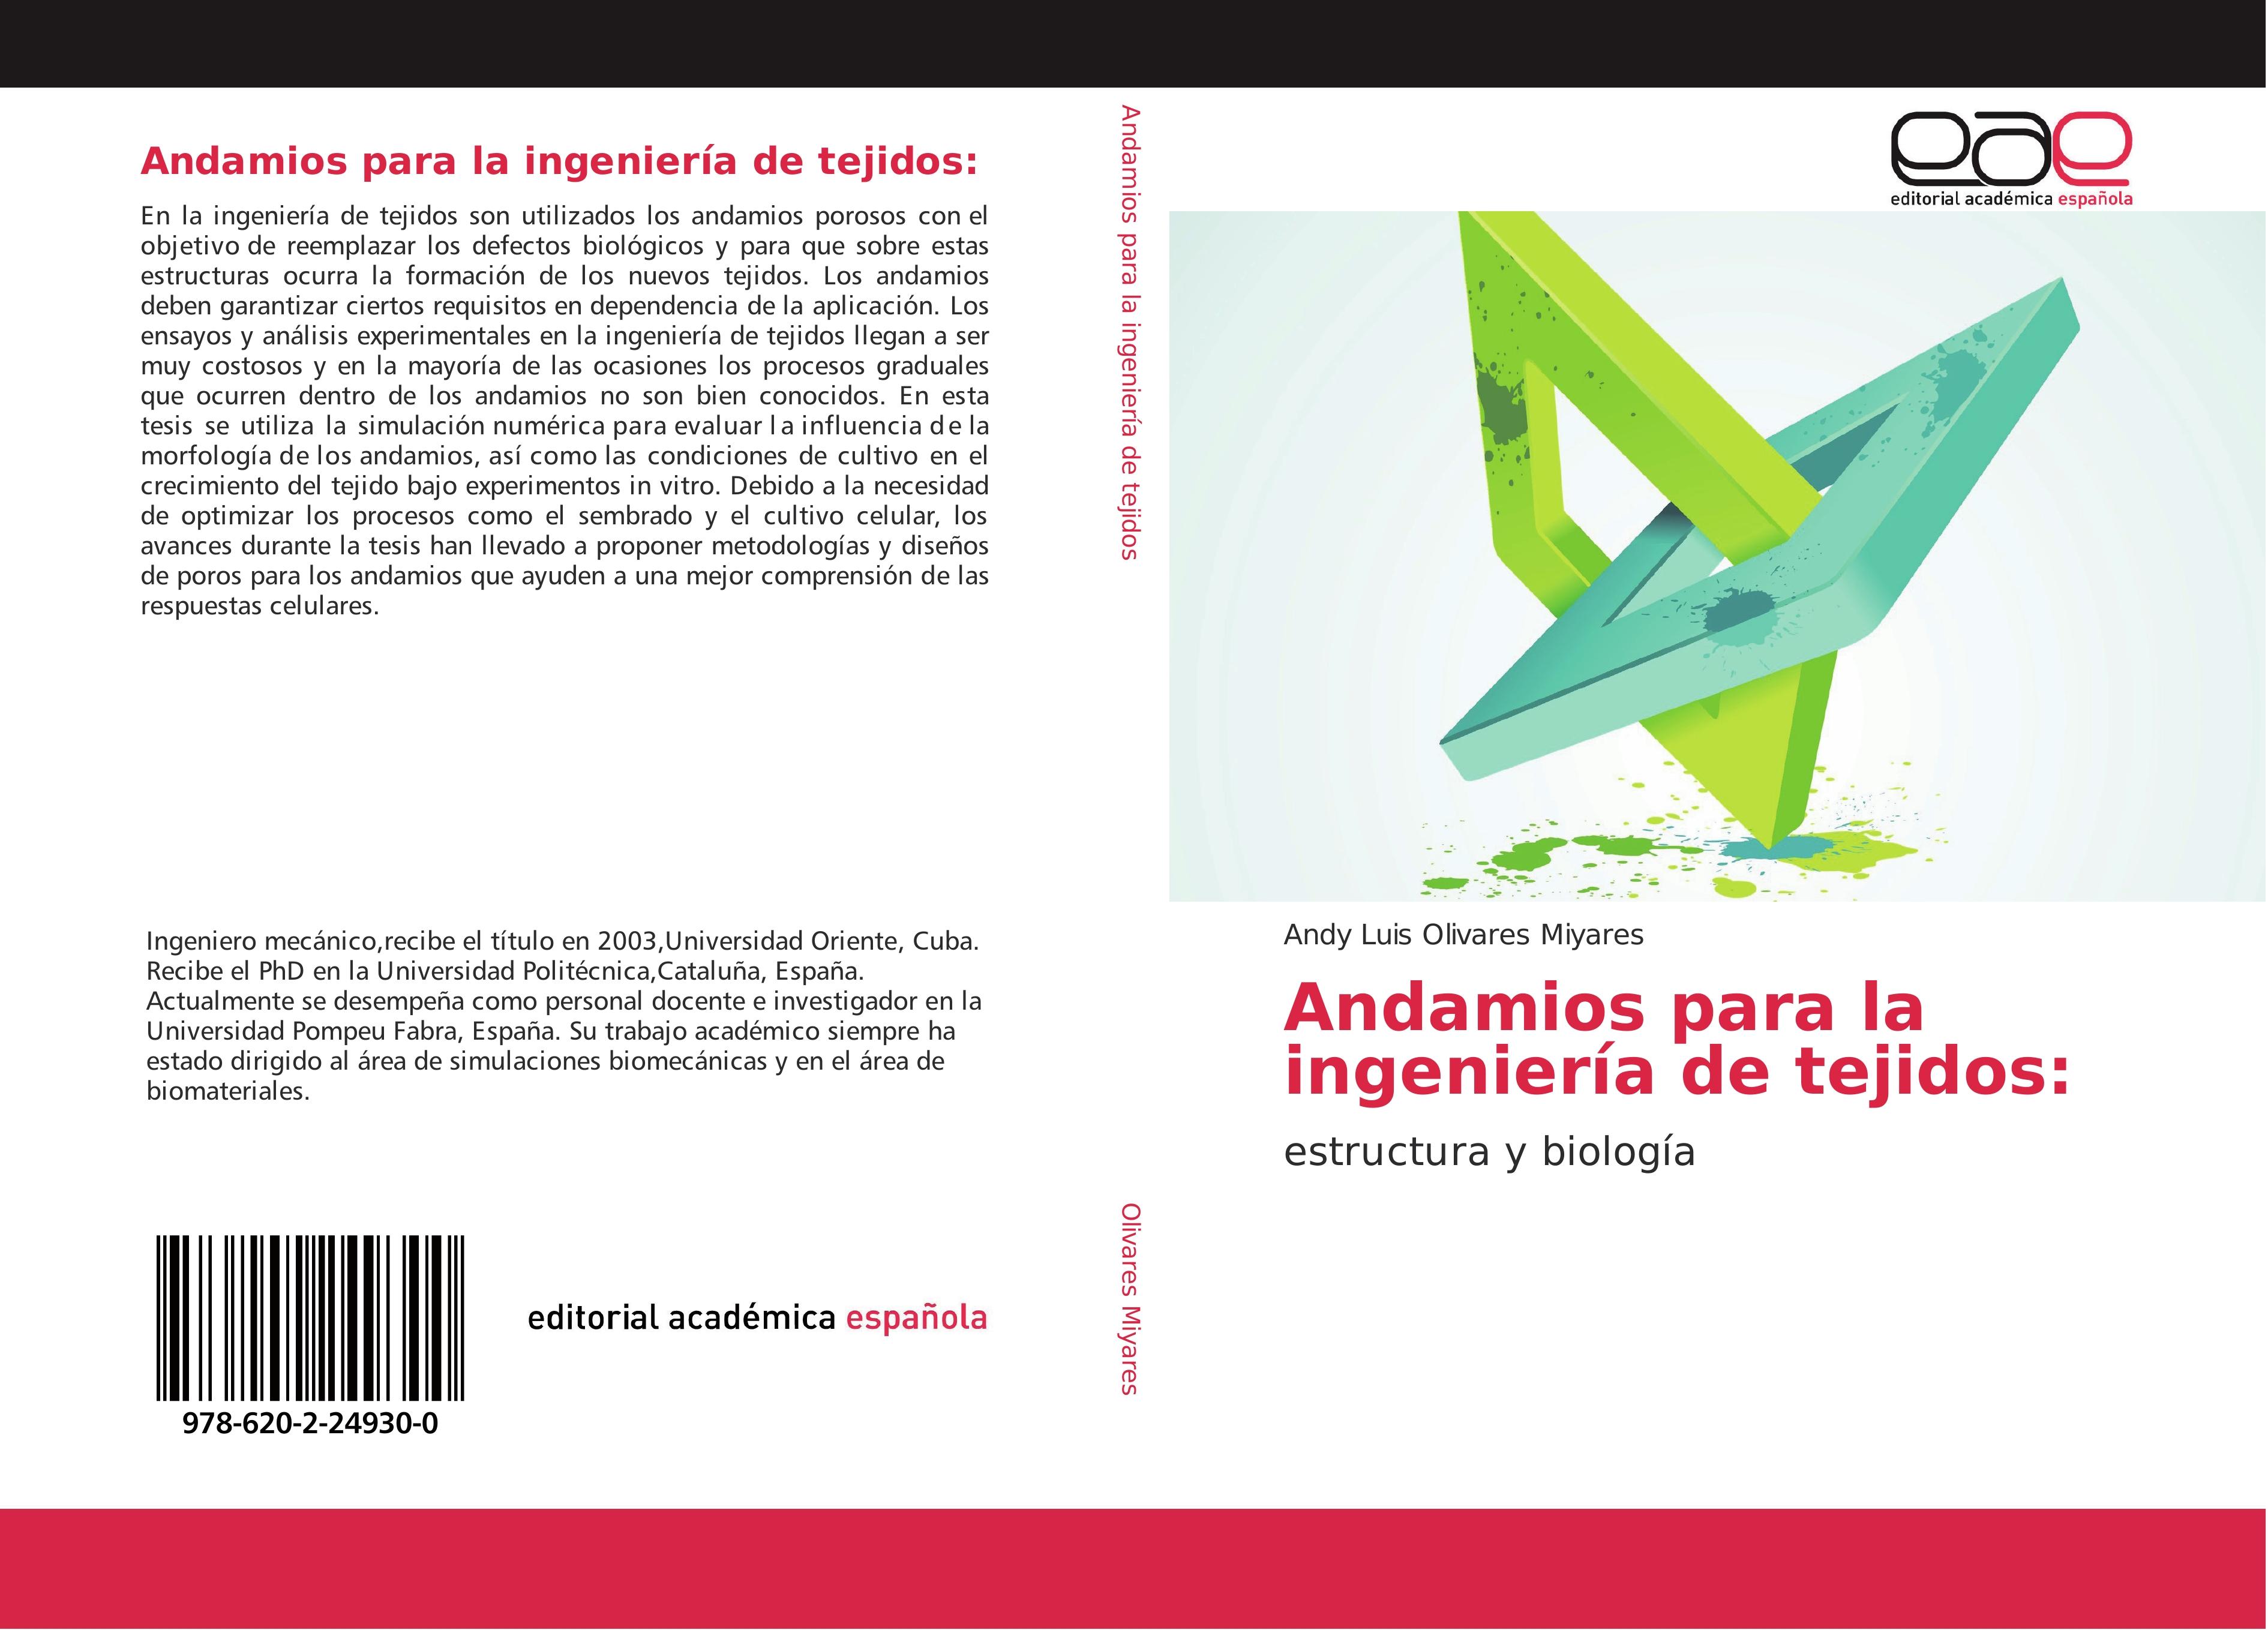 Andamios para la ingeniería de tejidos - Andy Luis Olivares Miyares